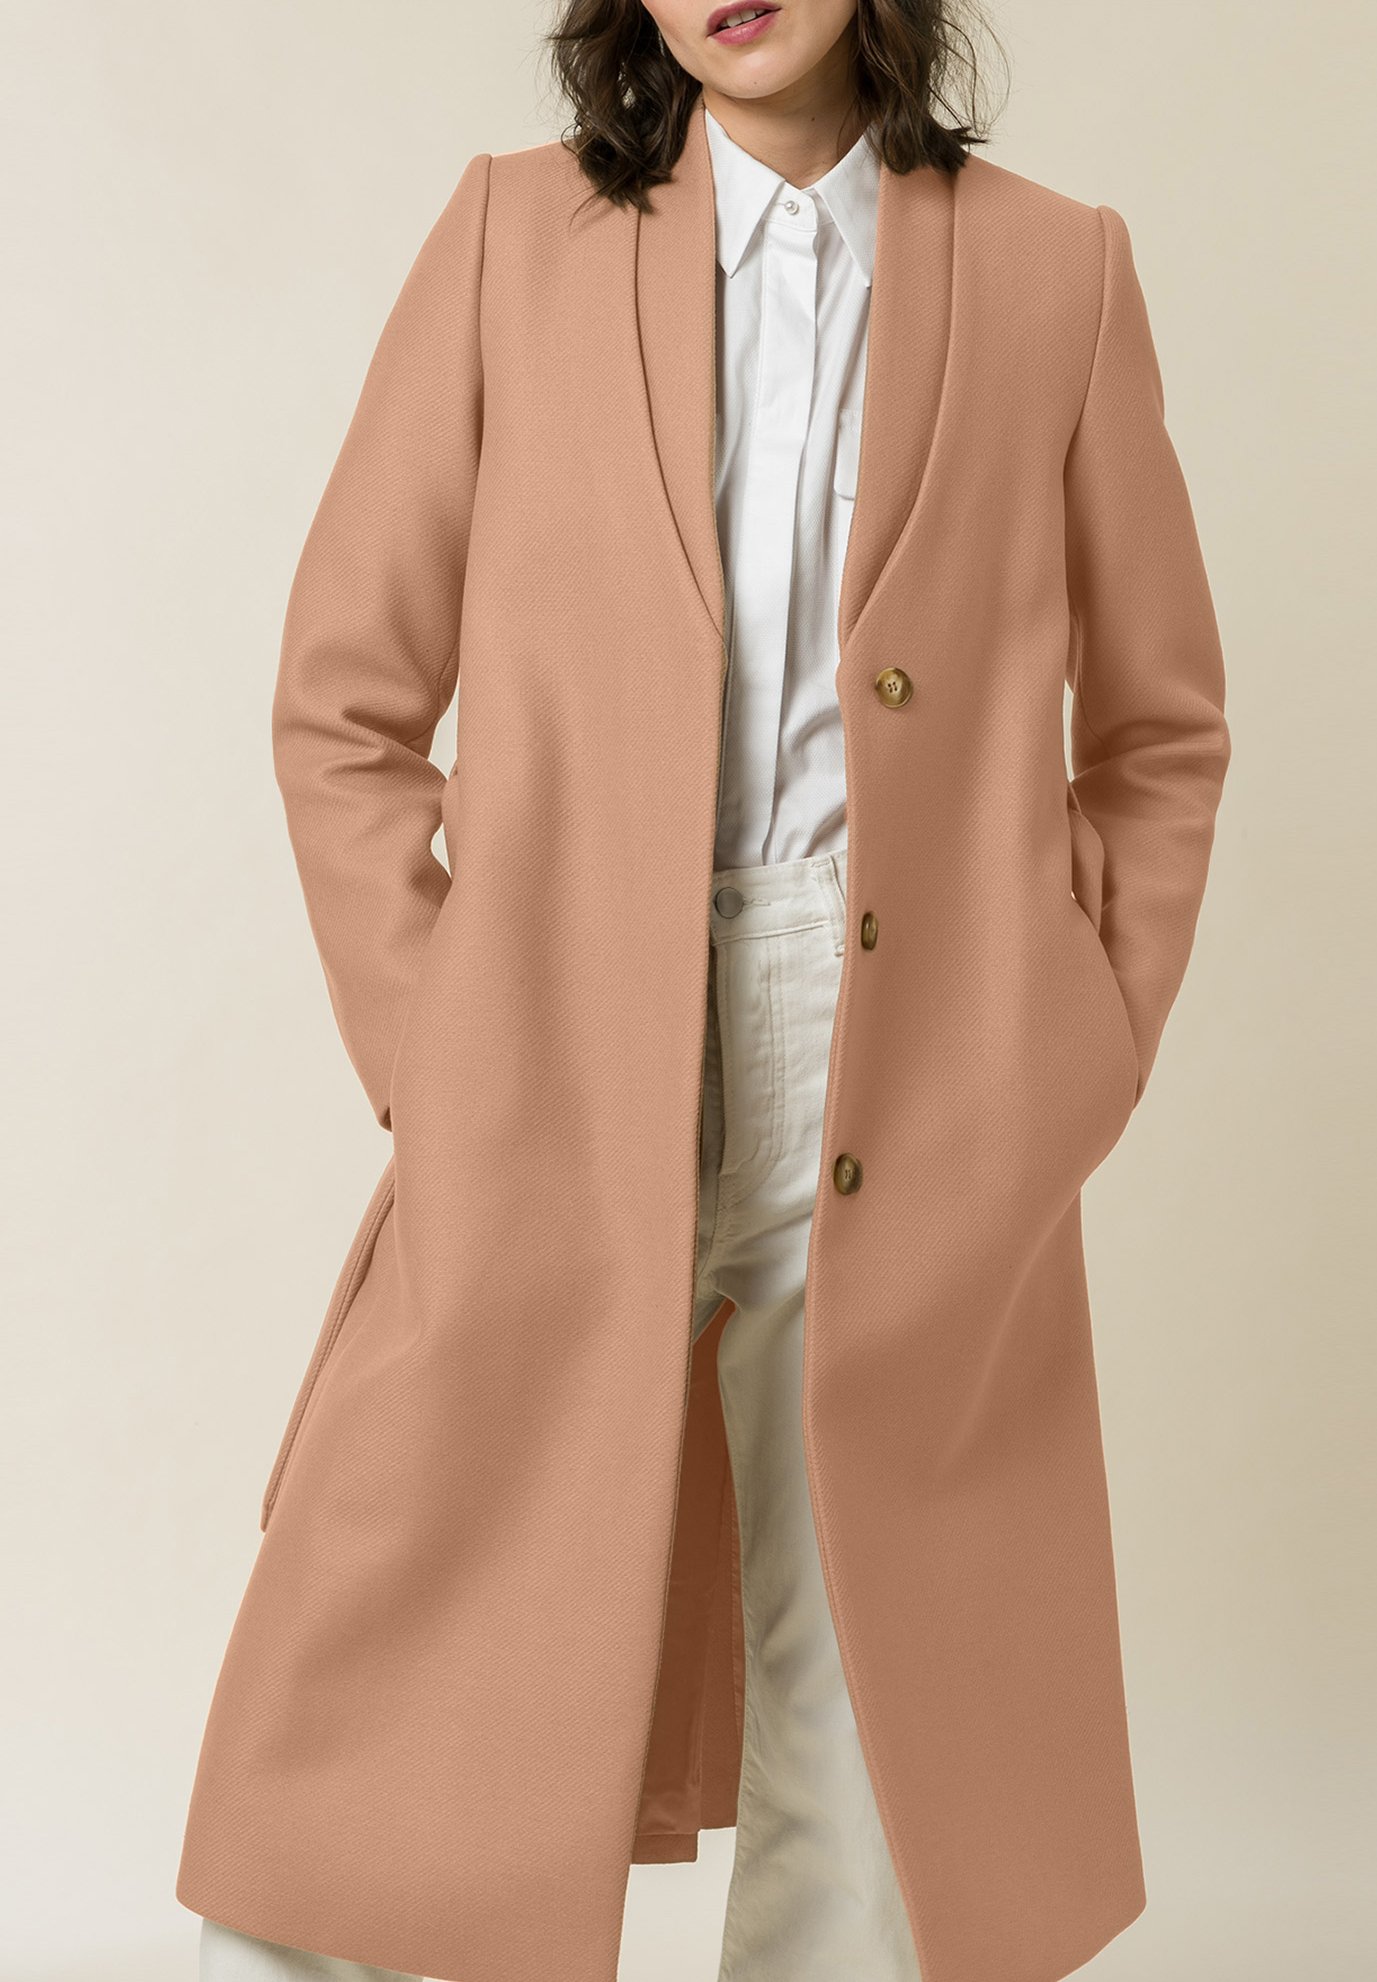 Пальто классическое Ivy Oak длинное, коричневый свитер kalla ivy oak цвет copper red